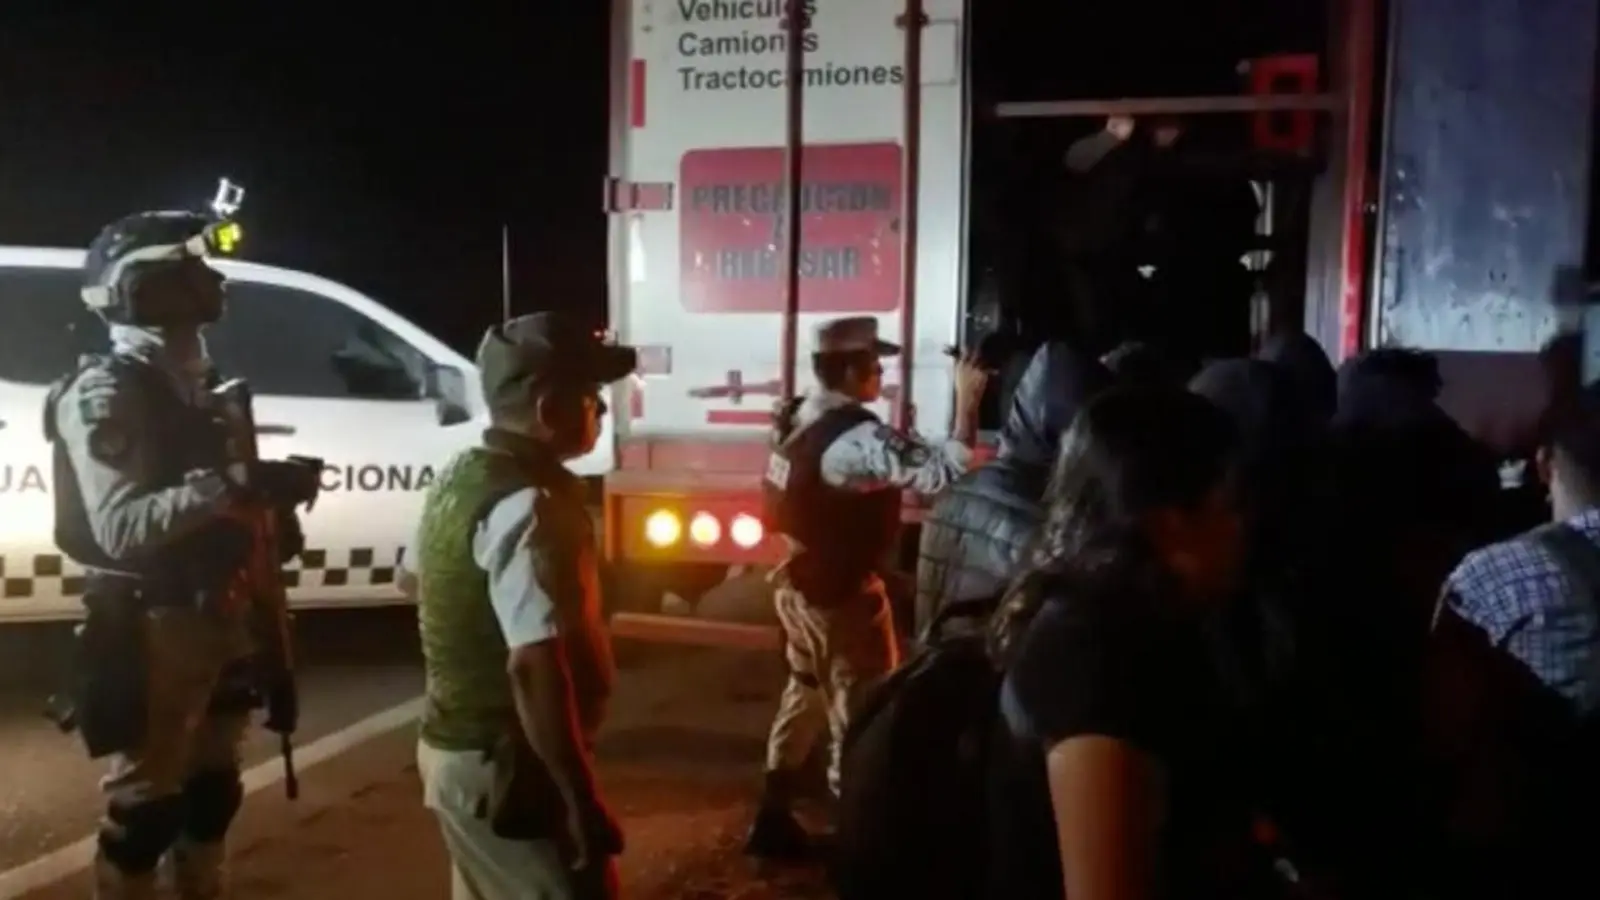 Migranten verlassen im Beisein von Sicherheitskräften den Lastwagen - die meisten von ihnen stammen aus Guatemala. (Foto: Instituto Nacional de Migración/dpa)